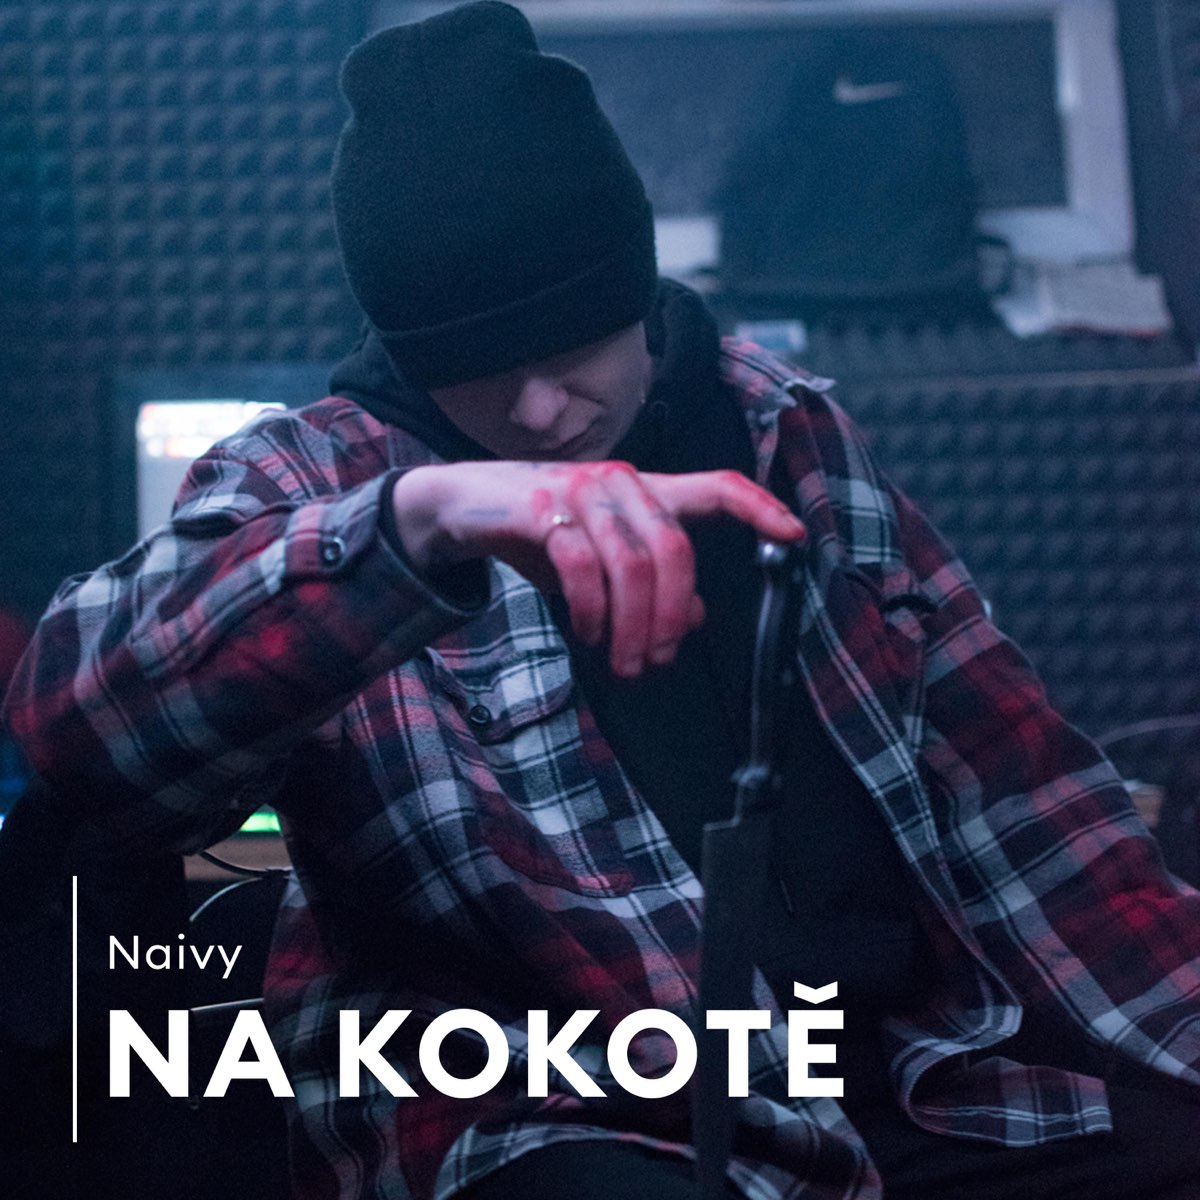 Na kokotě - Single by Naivy Official on Apple Music